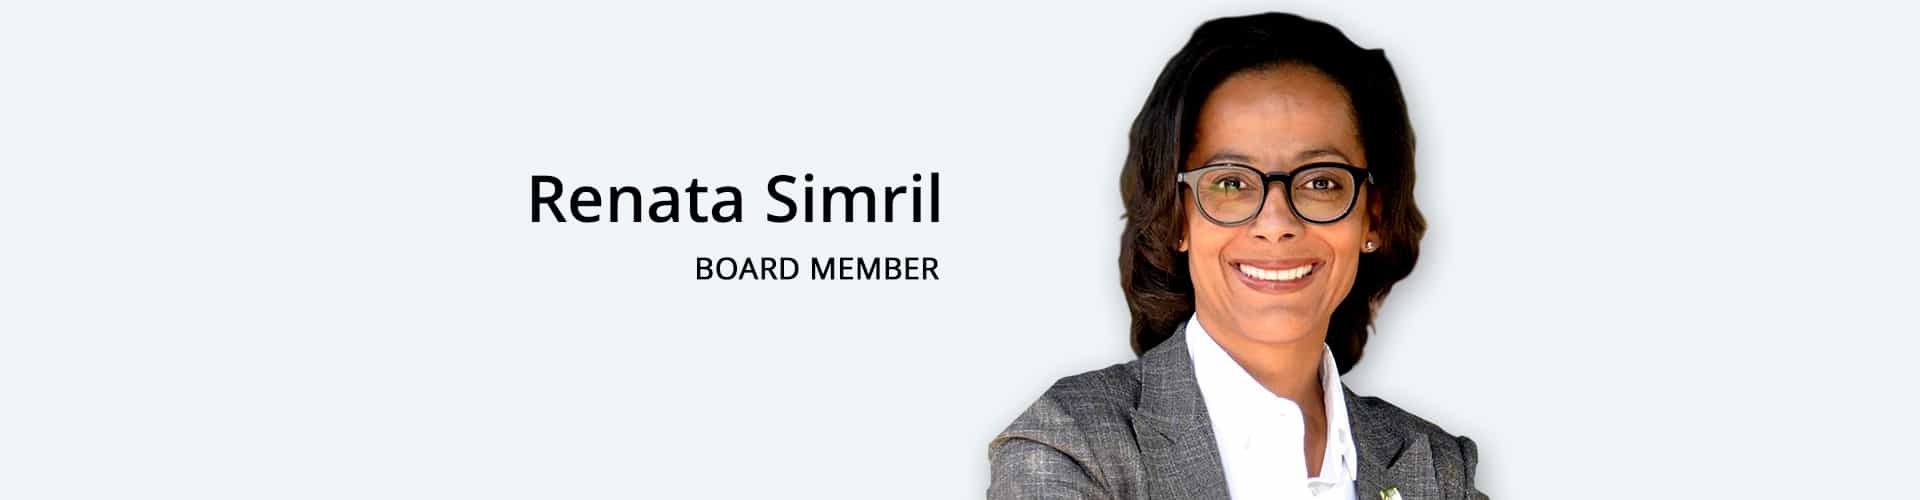 Renata Simril-Board Member